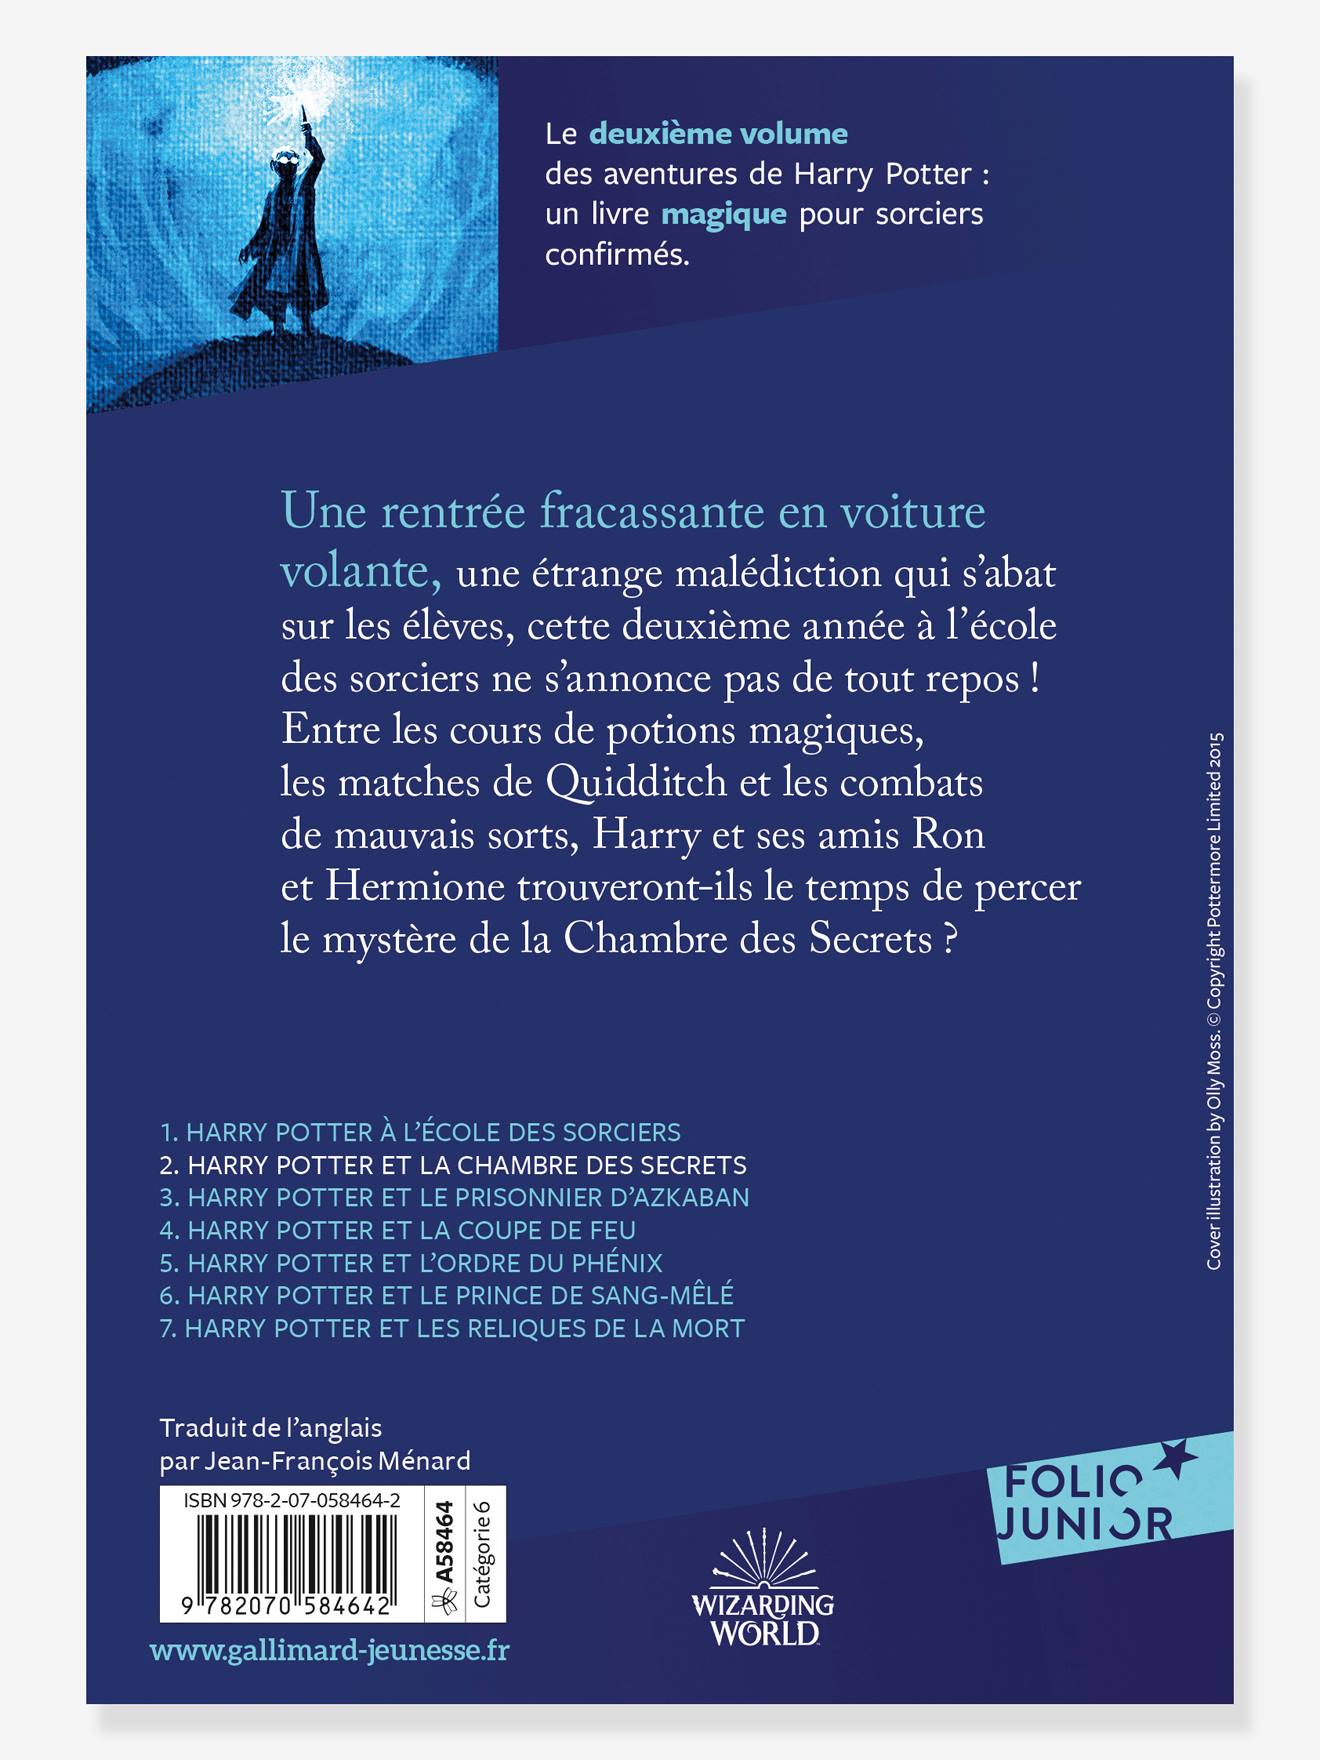 Harry Potter. Le Jeu des Sortilèges - Gallimard Jeunesse